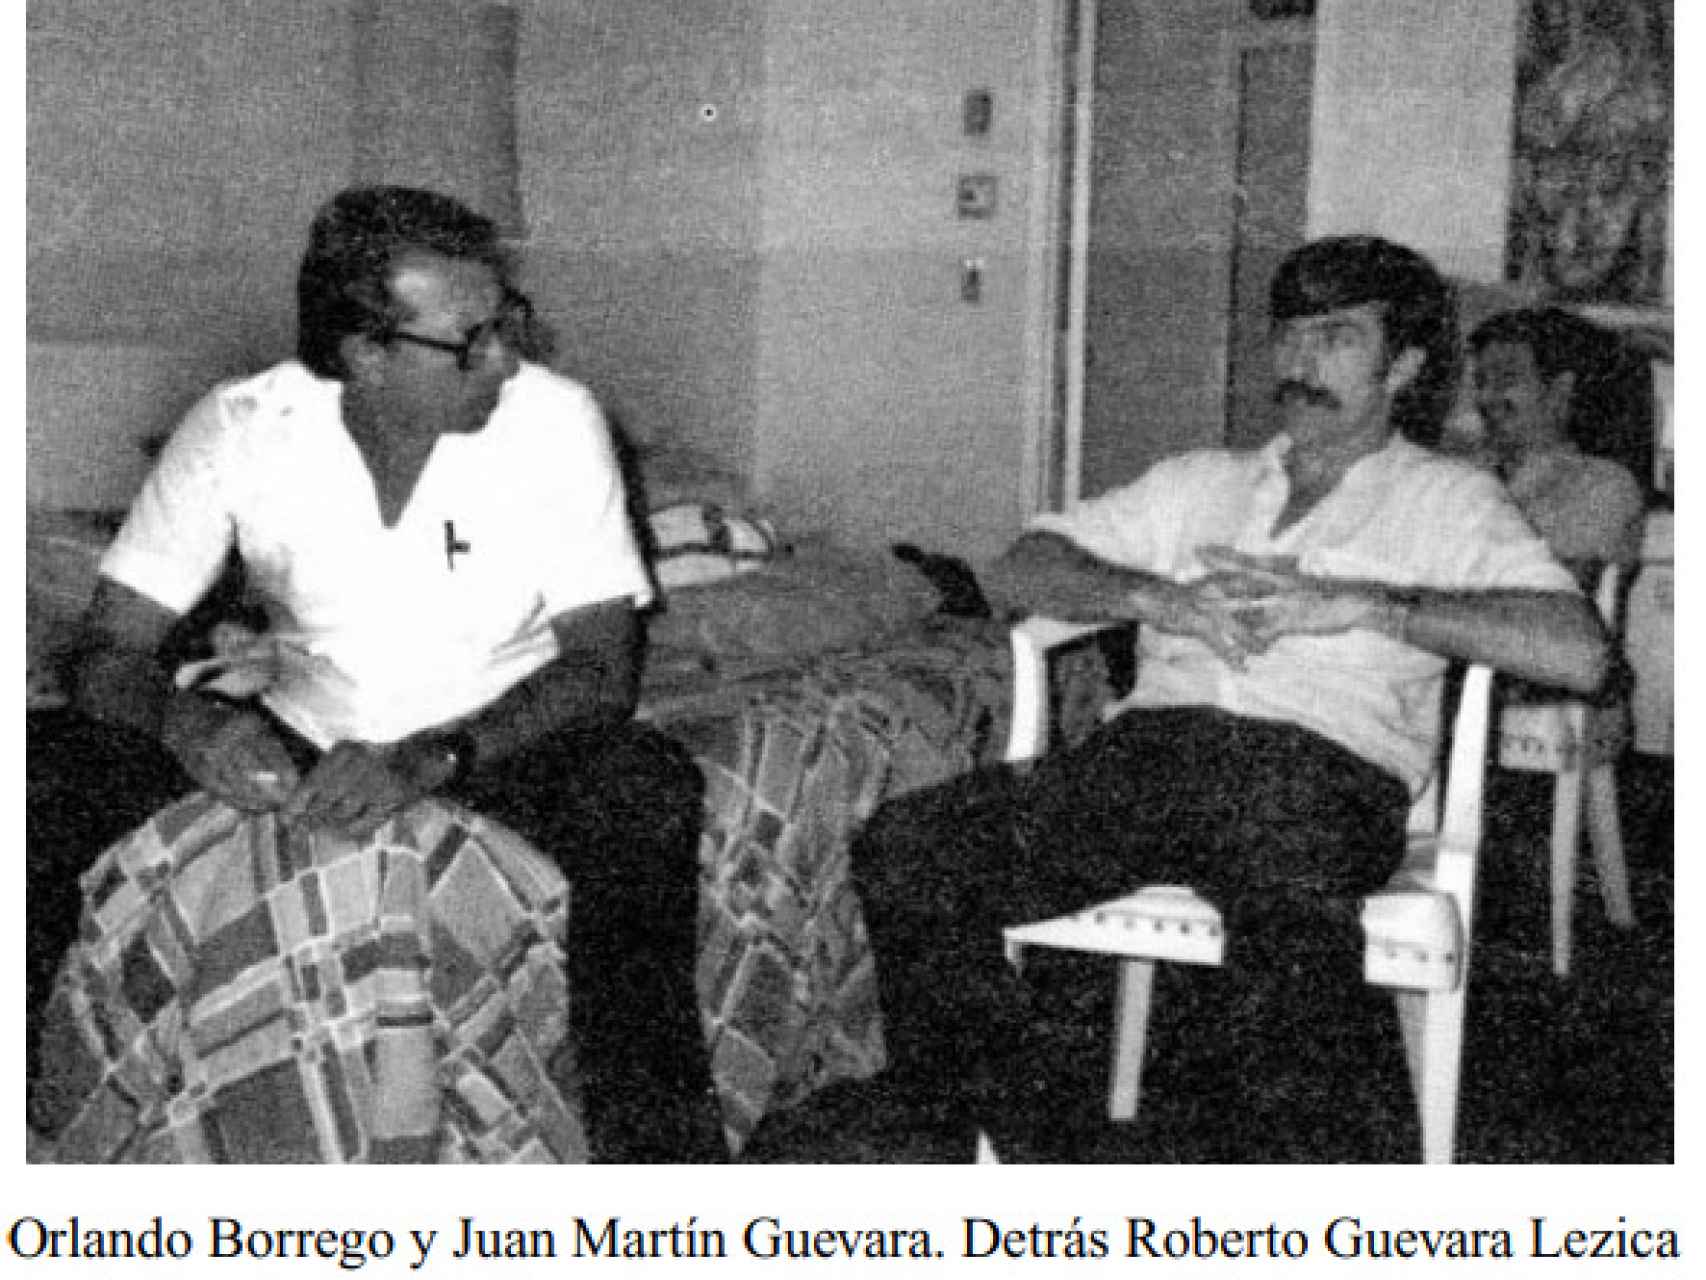 Imagen de Roberto Guevara Lezica (al fondo, a la derecha) recogida en el libro 'Che recuerdos en ráfaga', de Orlando Borrego.